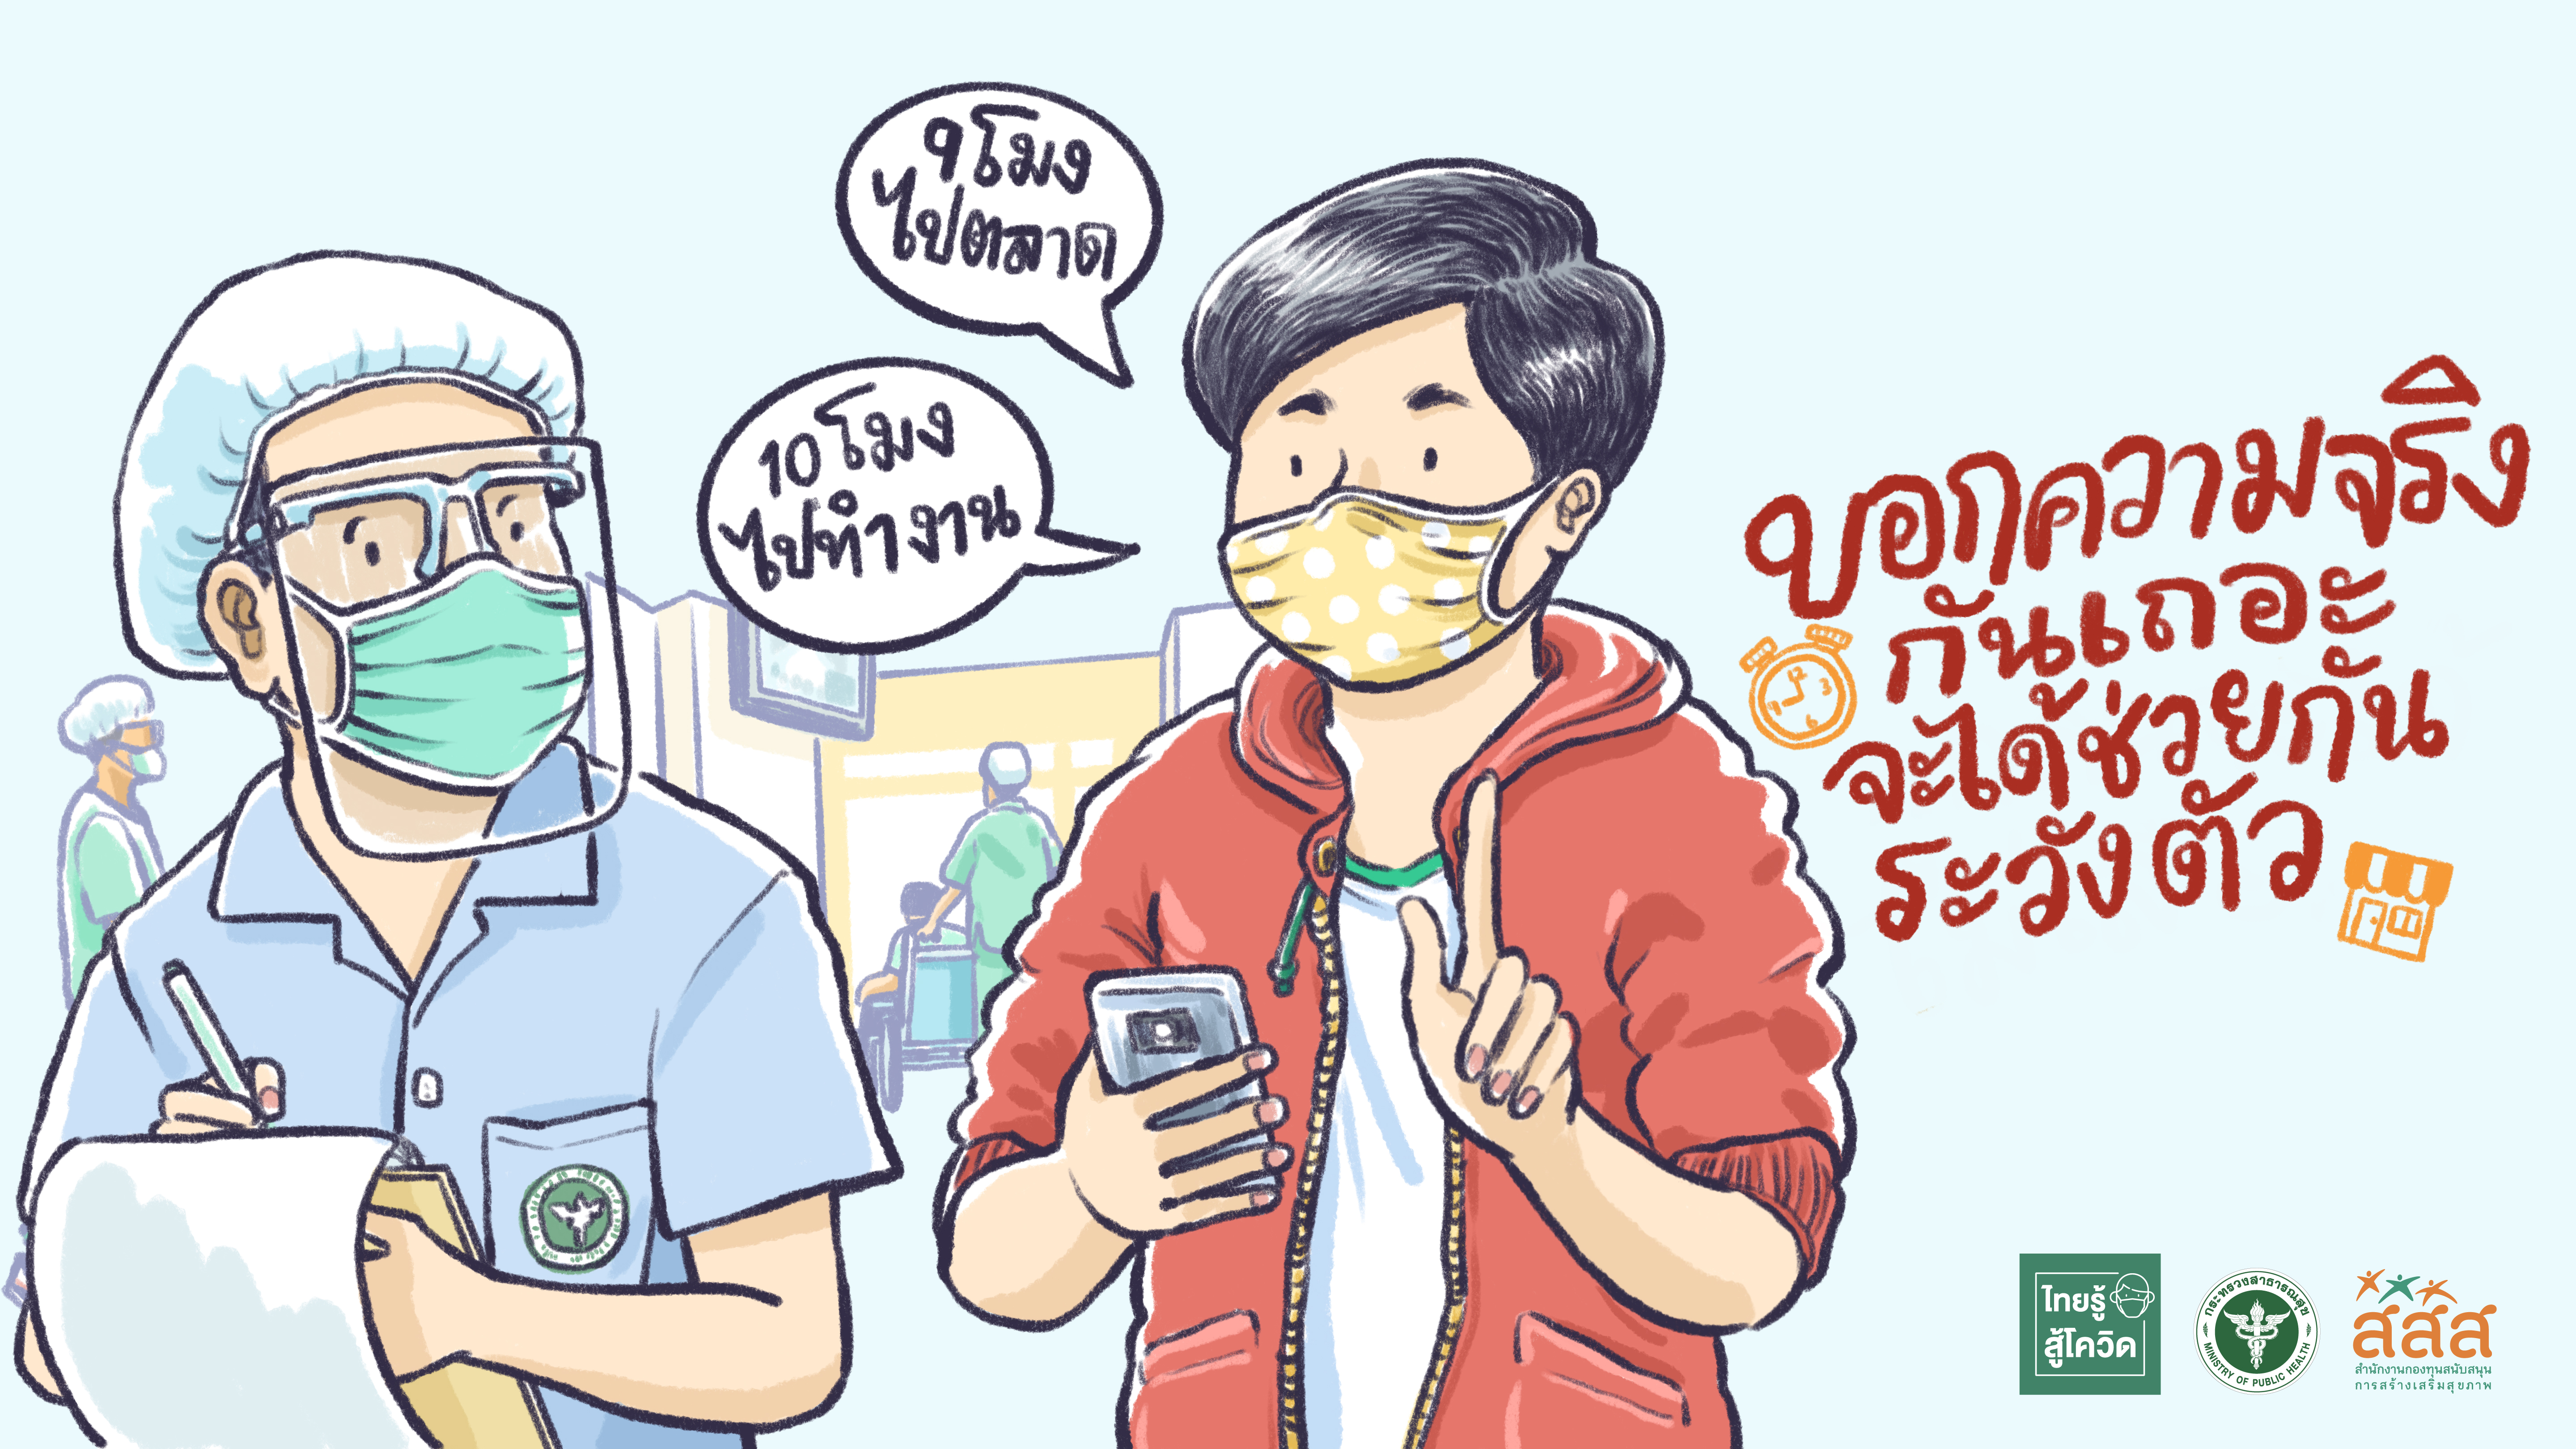 สสส.ส่งต่อสื่อชุดใหม่ ชวนคนไทยไม่ให้การ์ดตก มุ่งหวังเห็นพลังความร่วมมือกันอีกครั้ง thaihealth